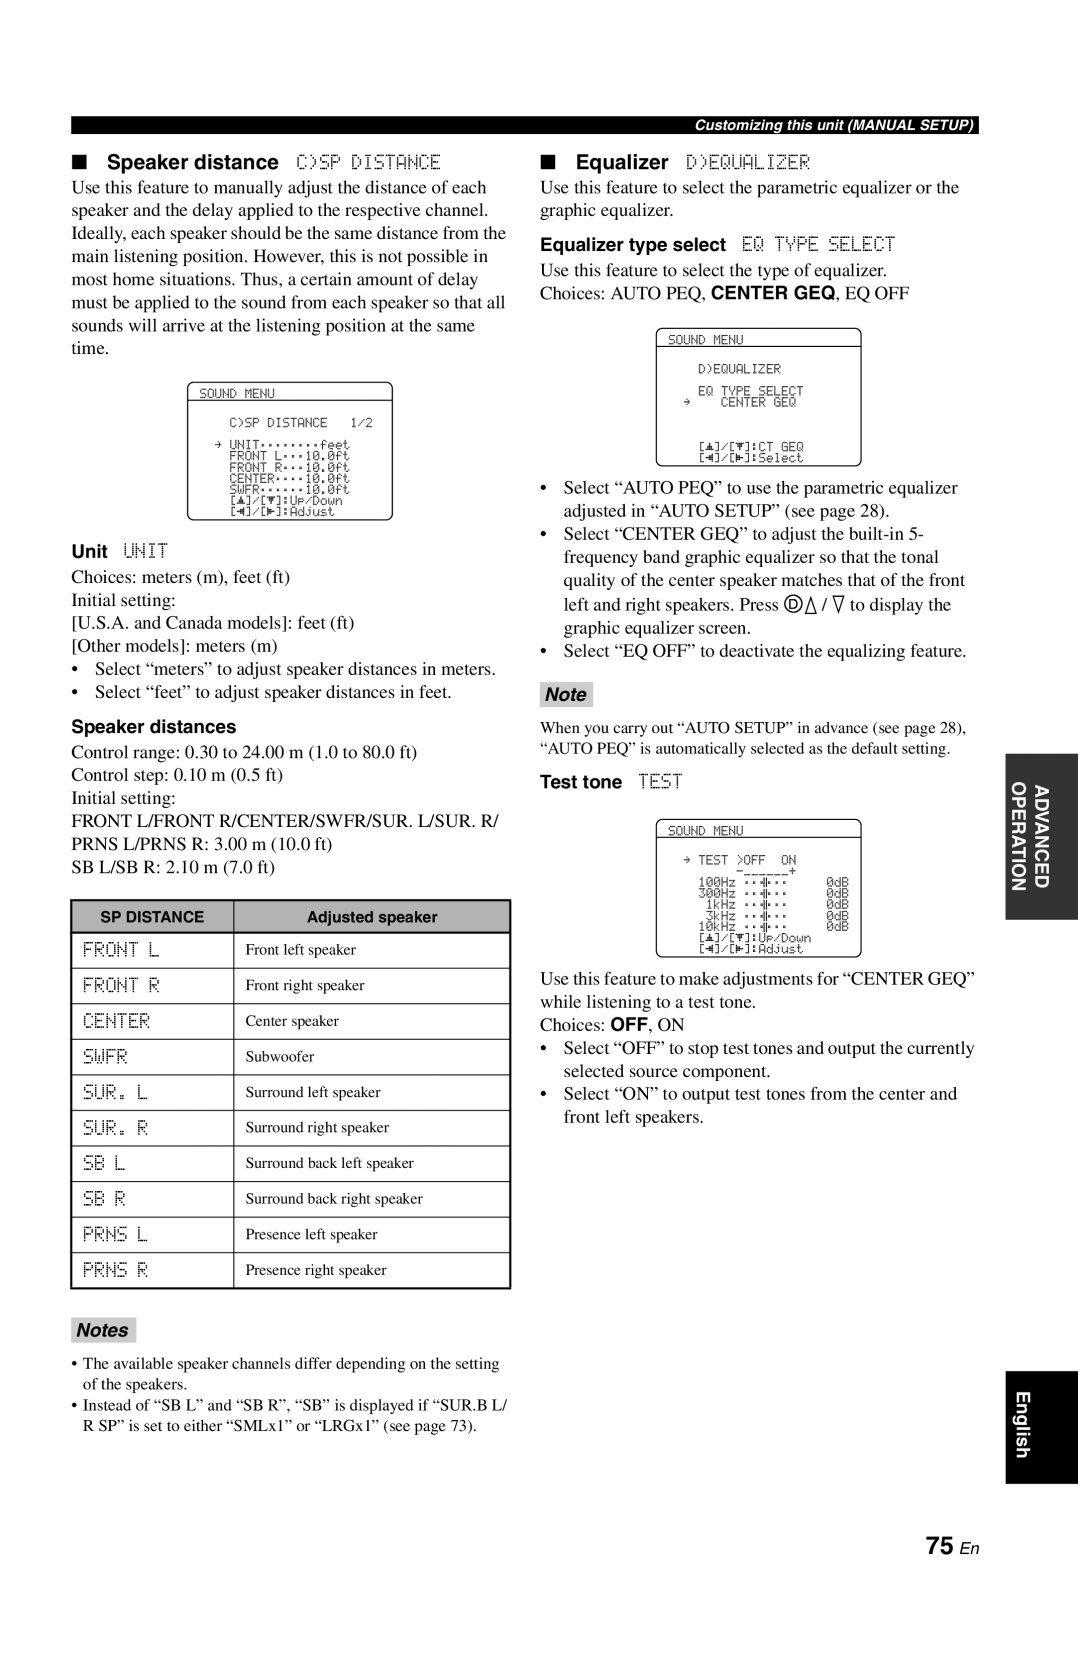 Yamaha RX-V861 owner manual 75 En, Speaker distance CSP DISTANCE, Notes 